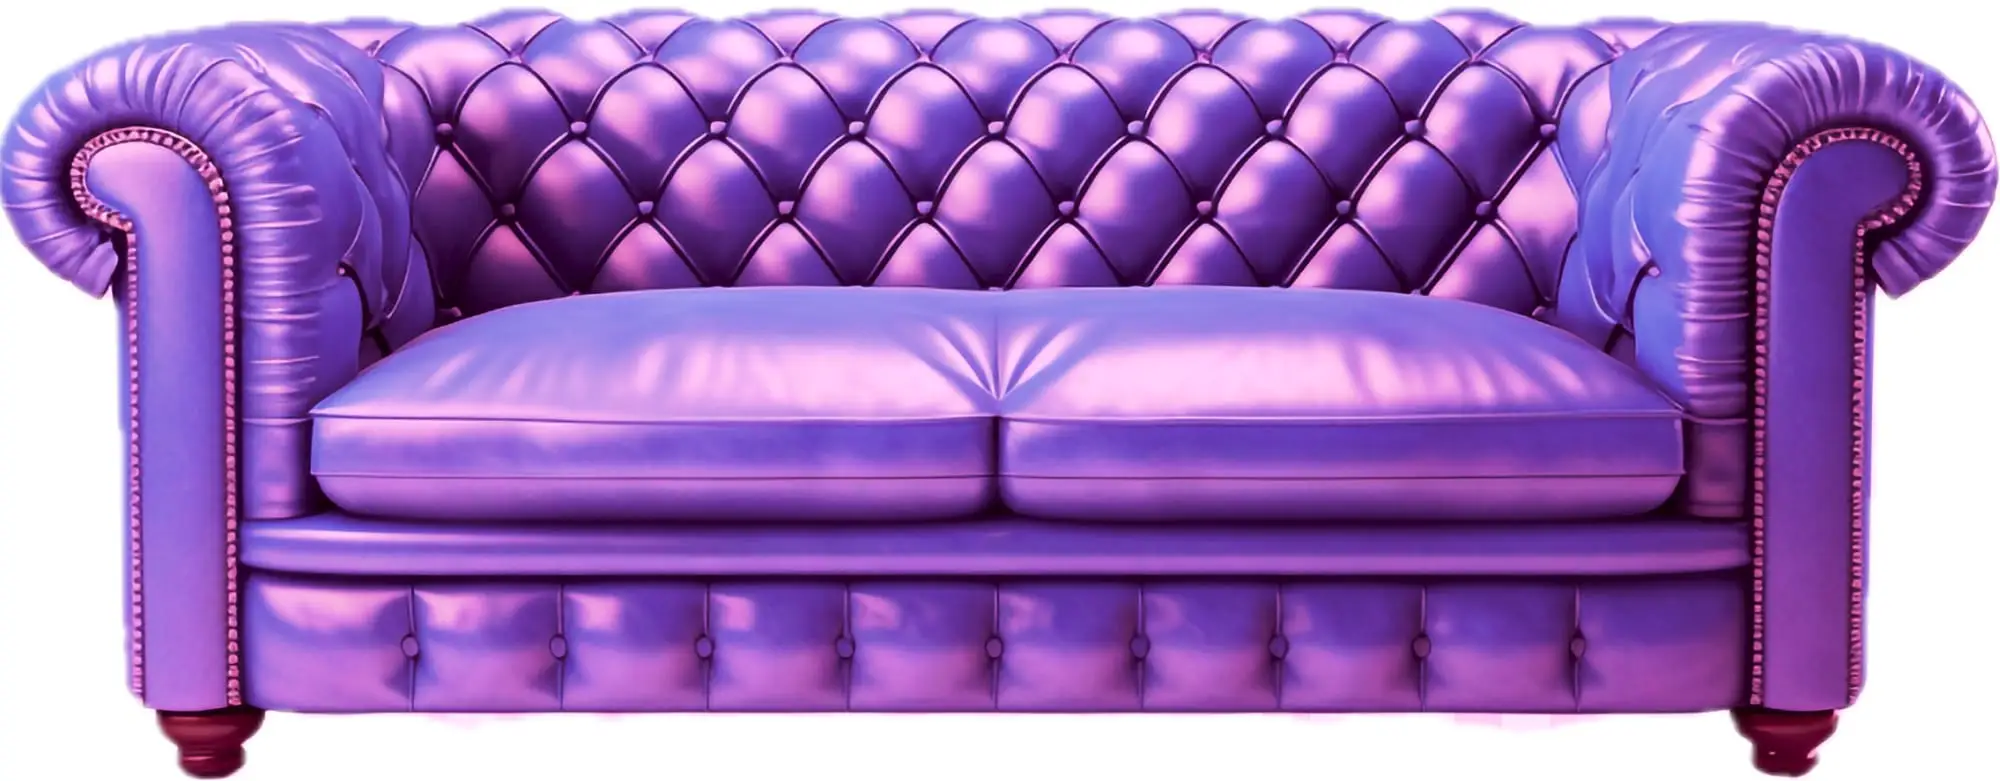 The Unholy sofa